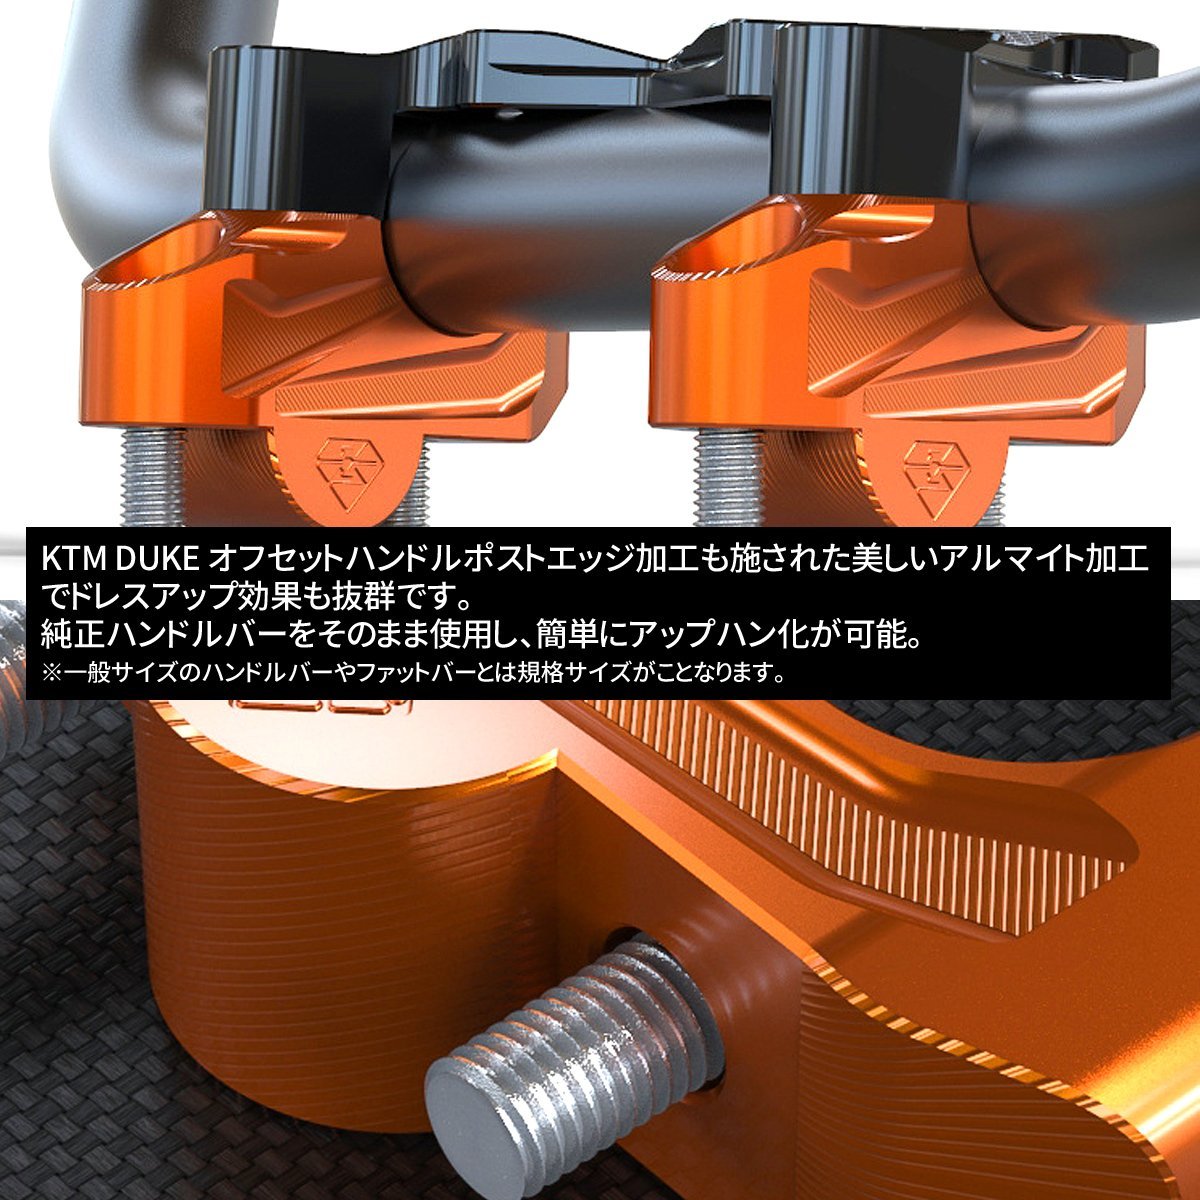 KTM DUKE ハンドルポスト ハンドルバーライザー スモールシリーズ専用 全年式対応 T6アルミ オレンジ SZ938-O_画像2